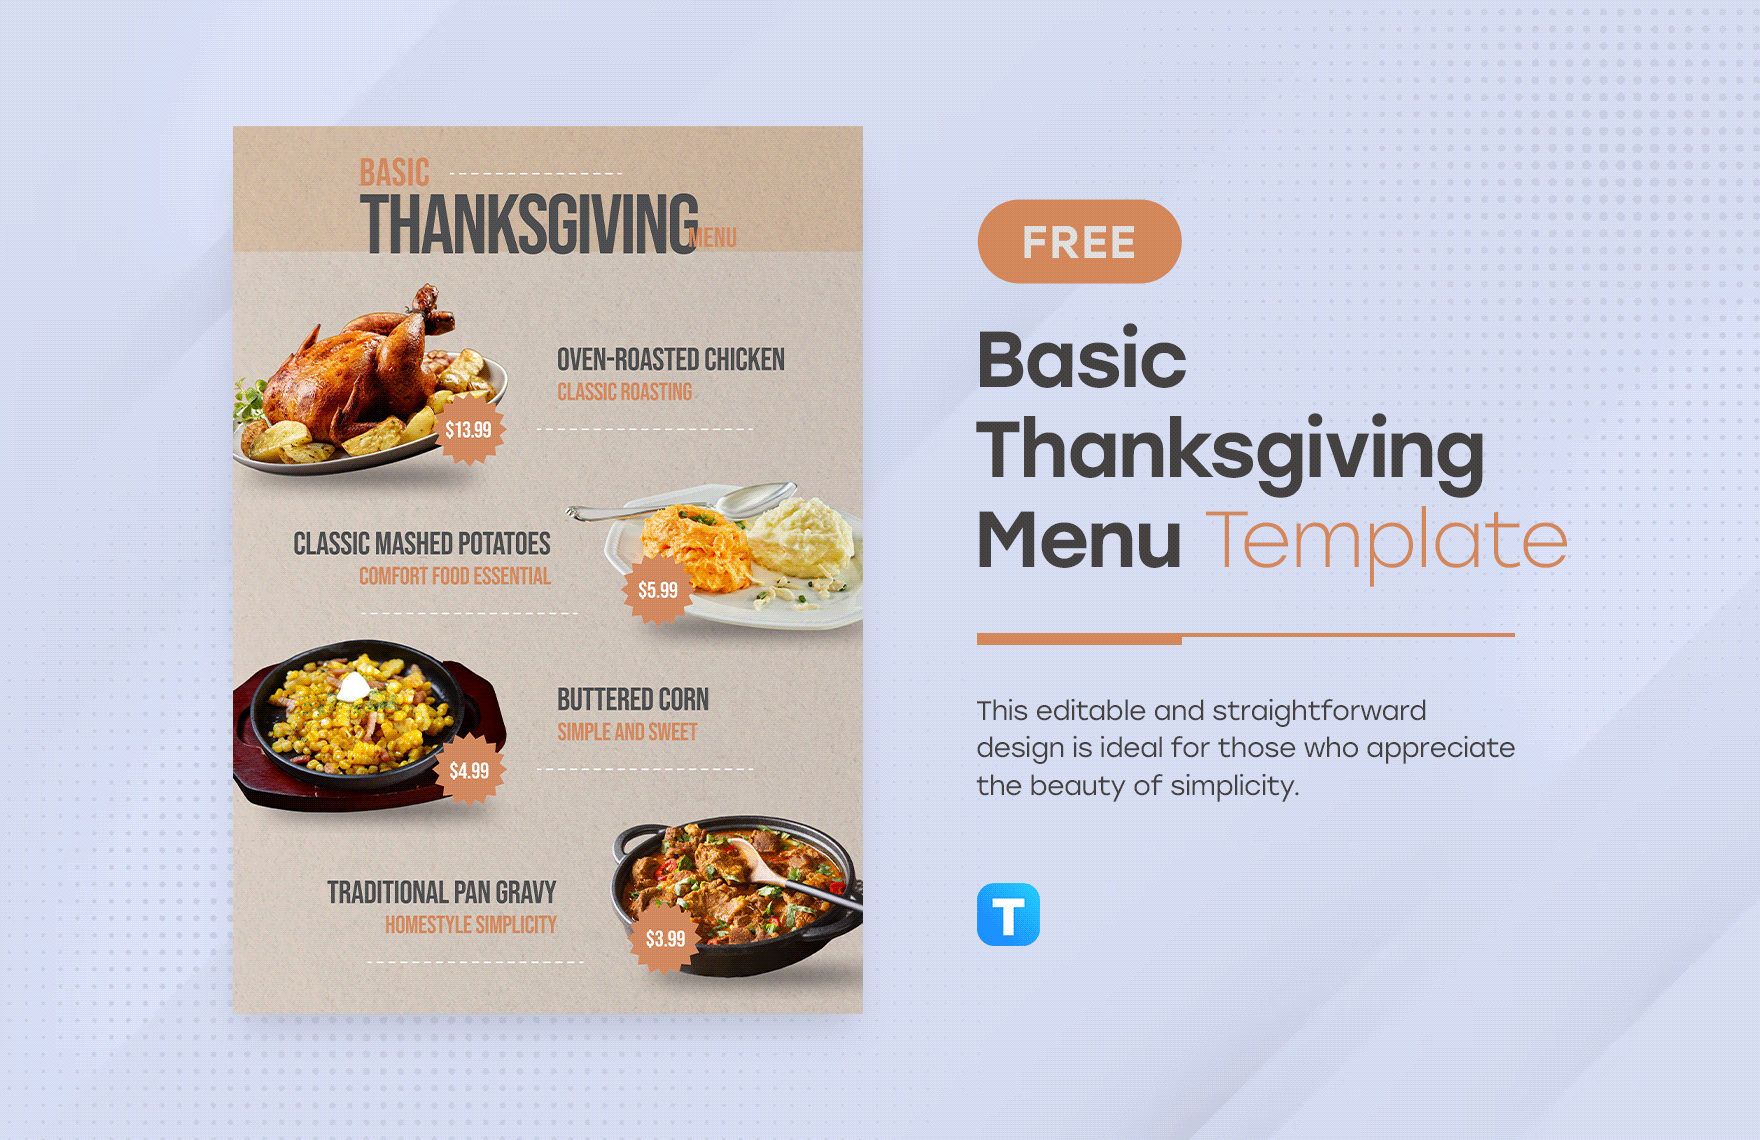 Basic Thanksgiving Menu Template